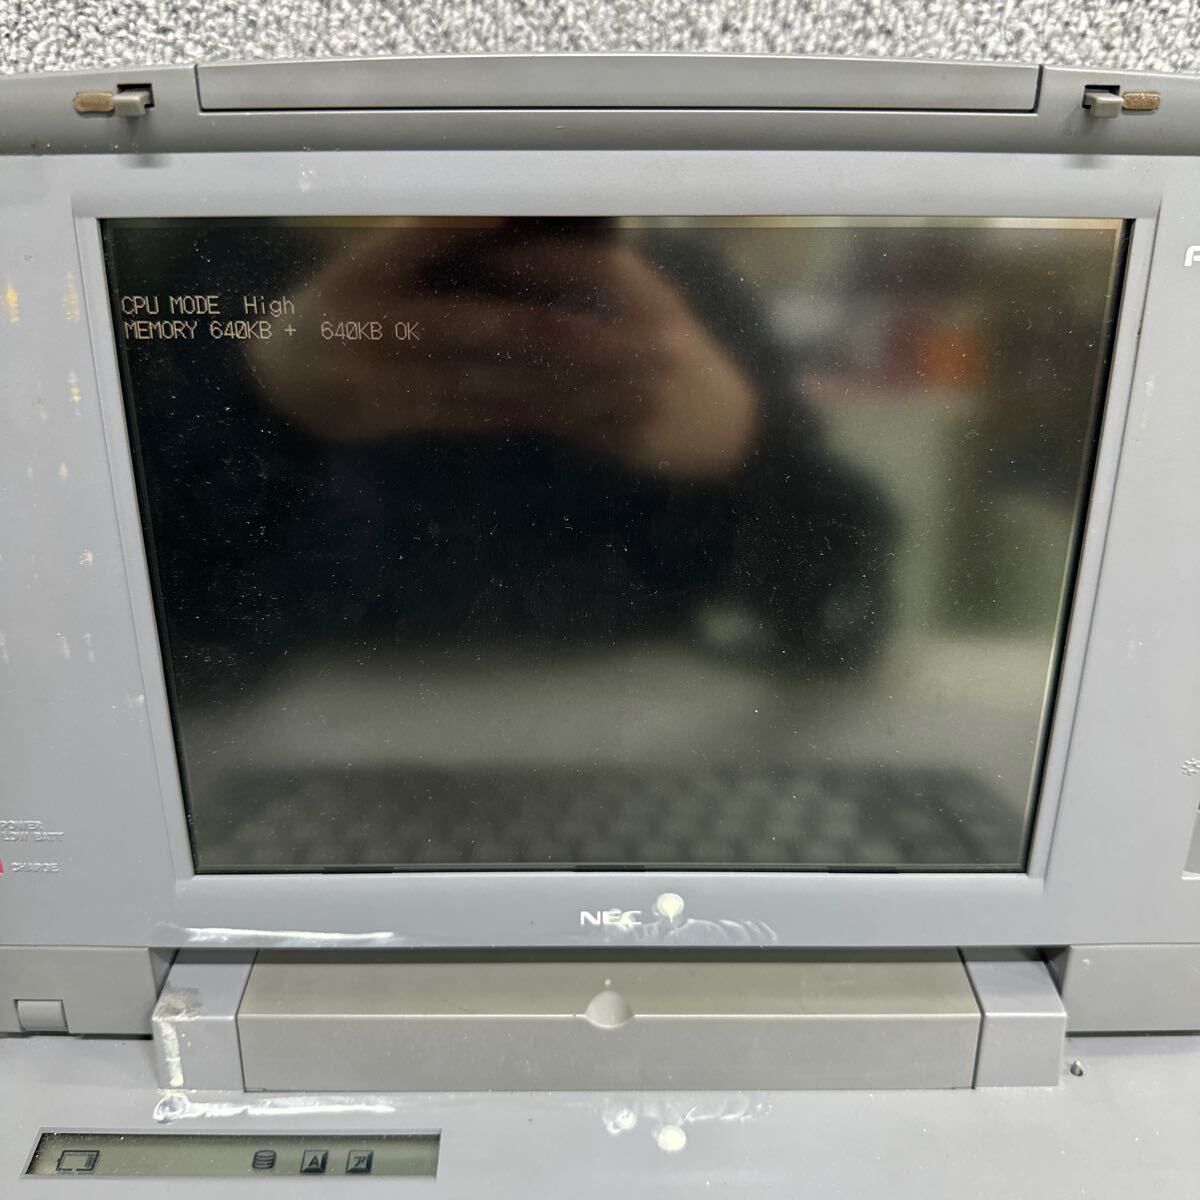 PCN98-1780 супер-скидка PC98 ноутбук NEC 98note PC-9821Ne пуск подтверждено Junk включение в покупку возможность 